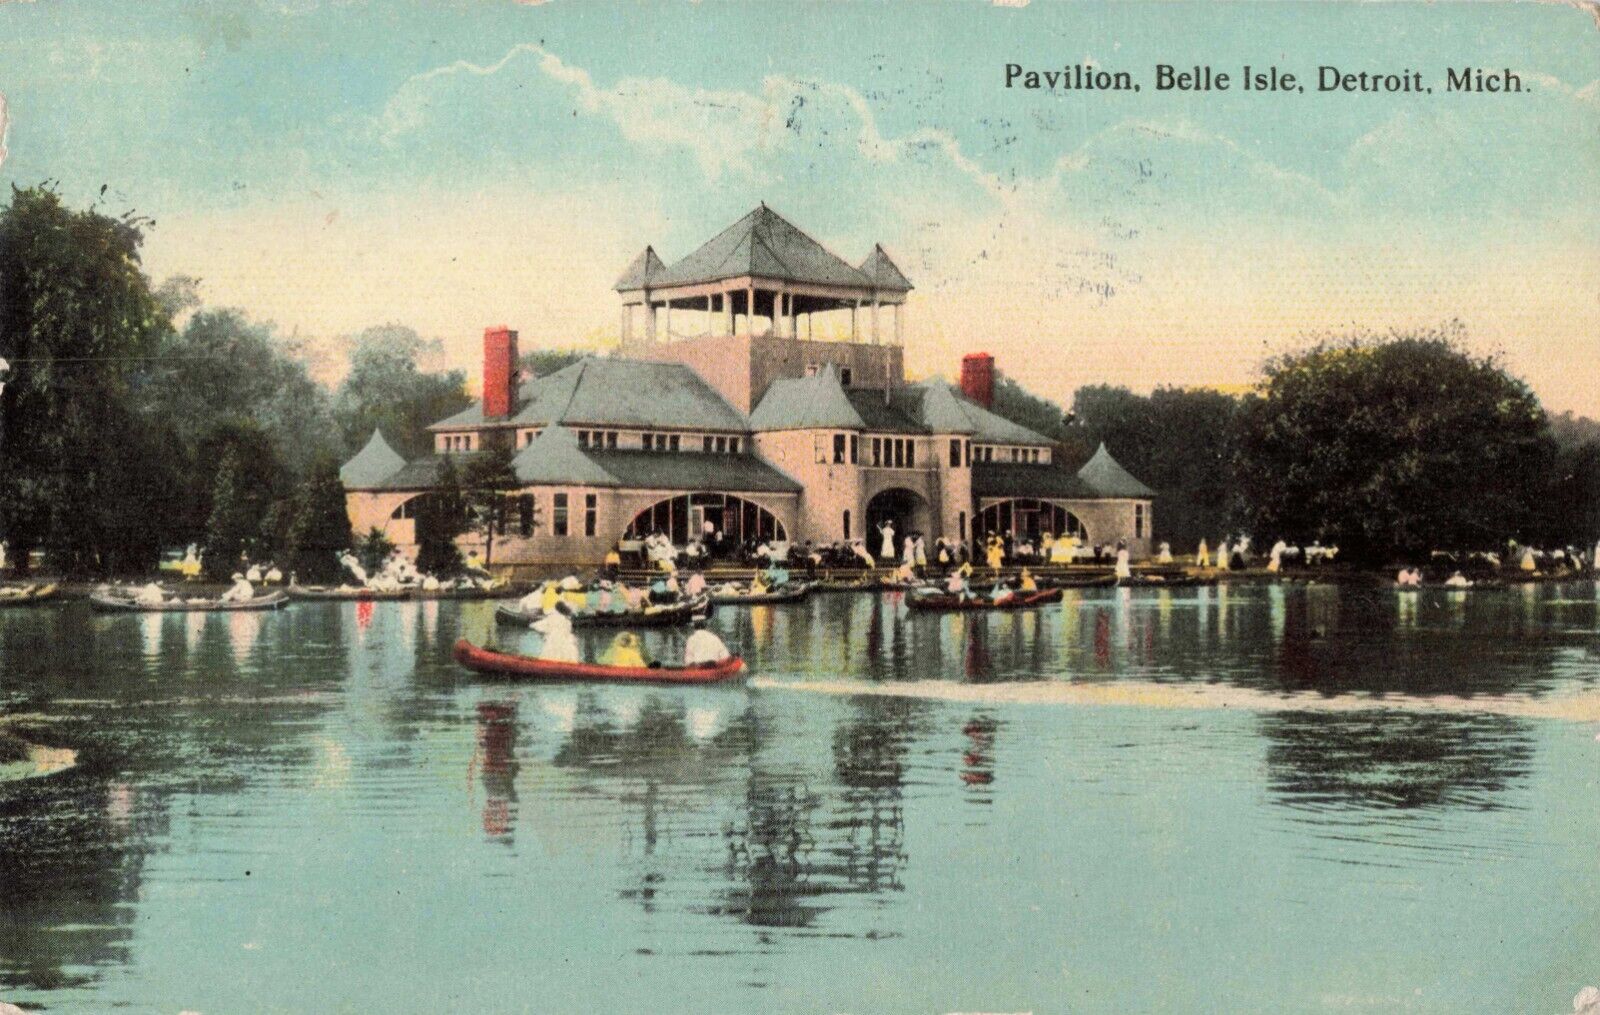 Detroit MI Michigan, Pavilion, Belle Isle, Canoes Boats, Vintage Postcard